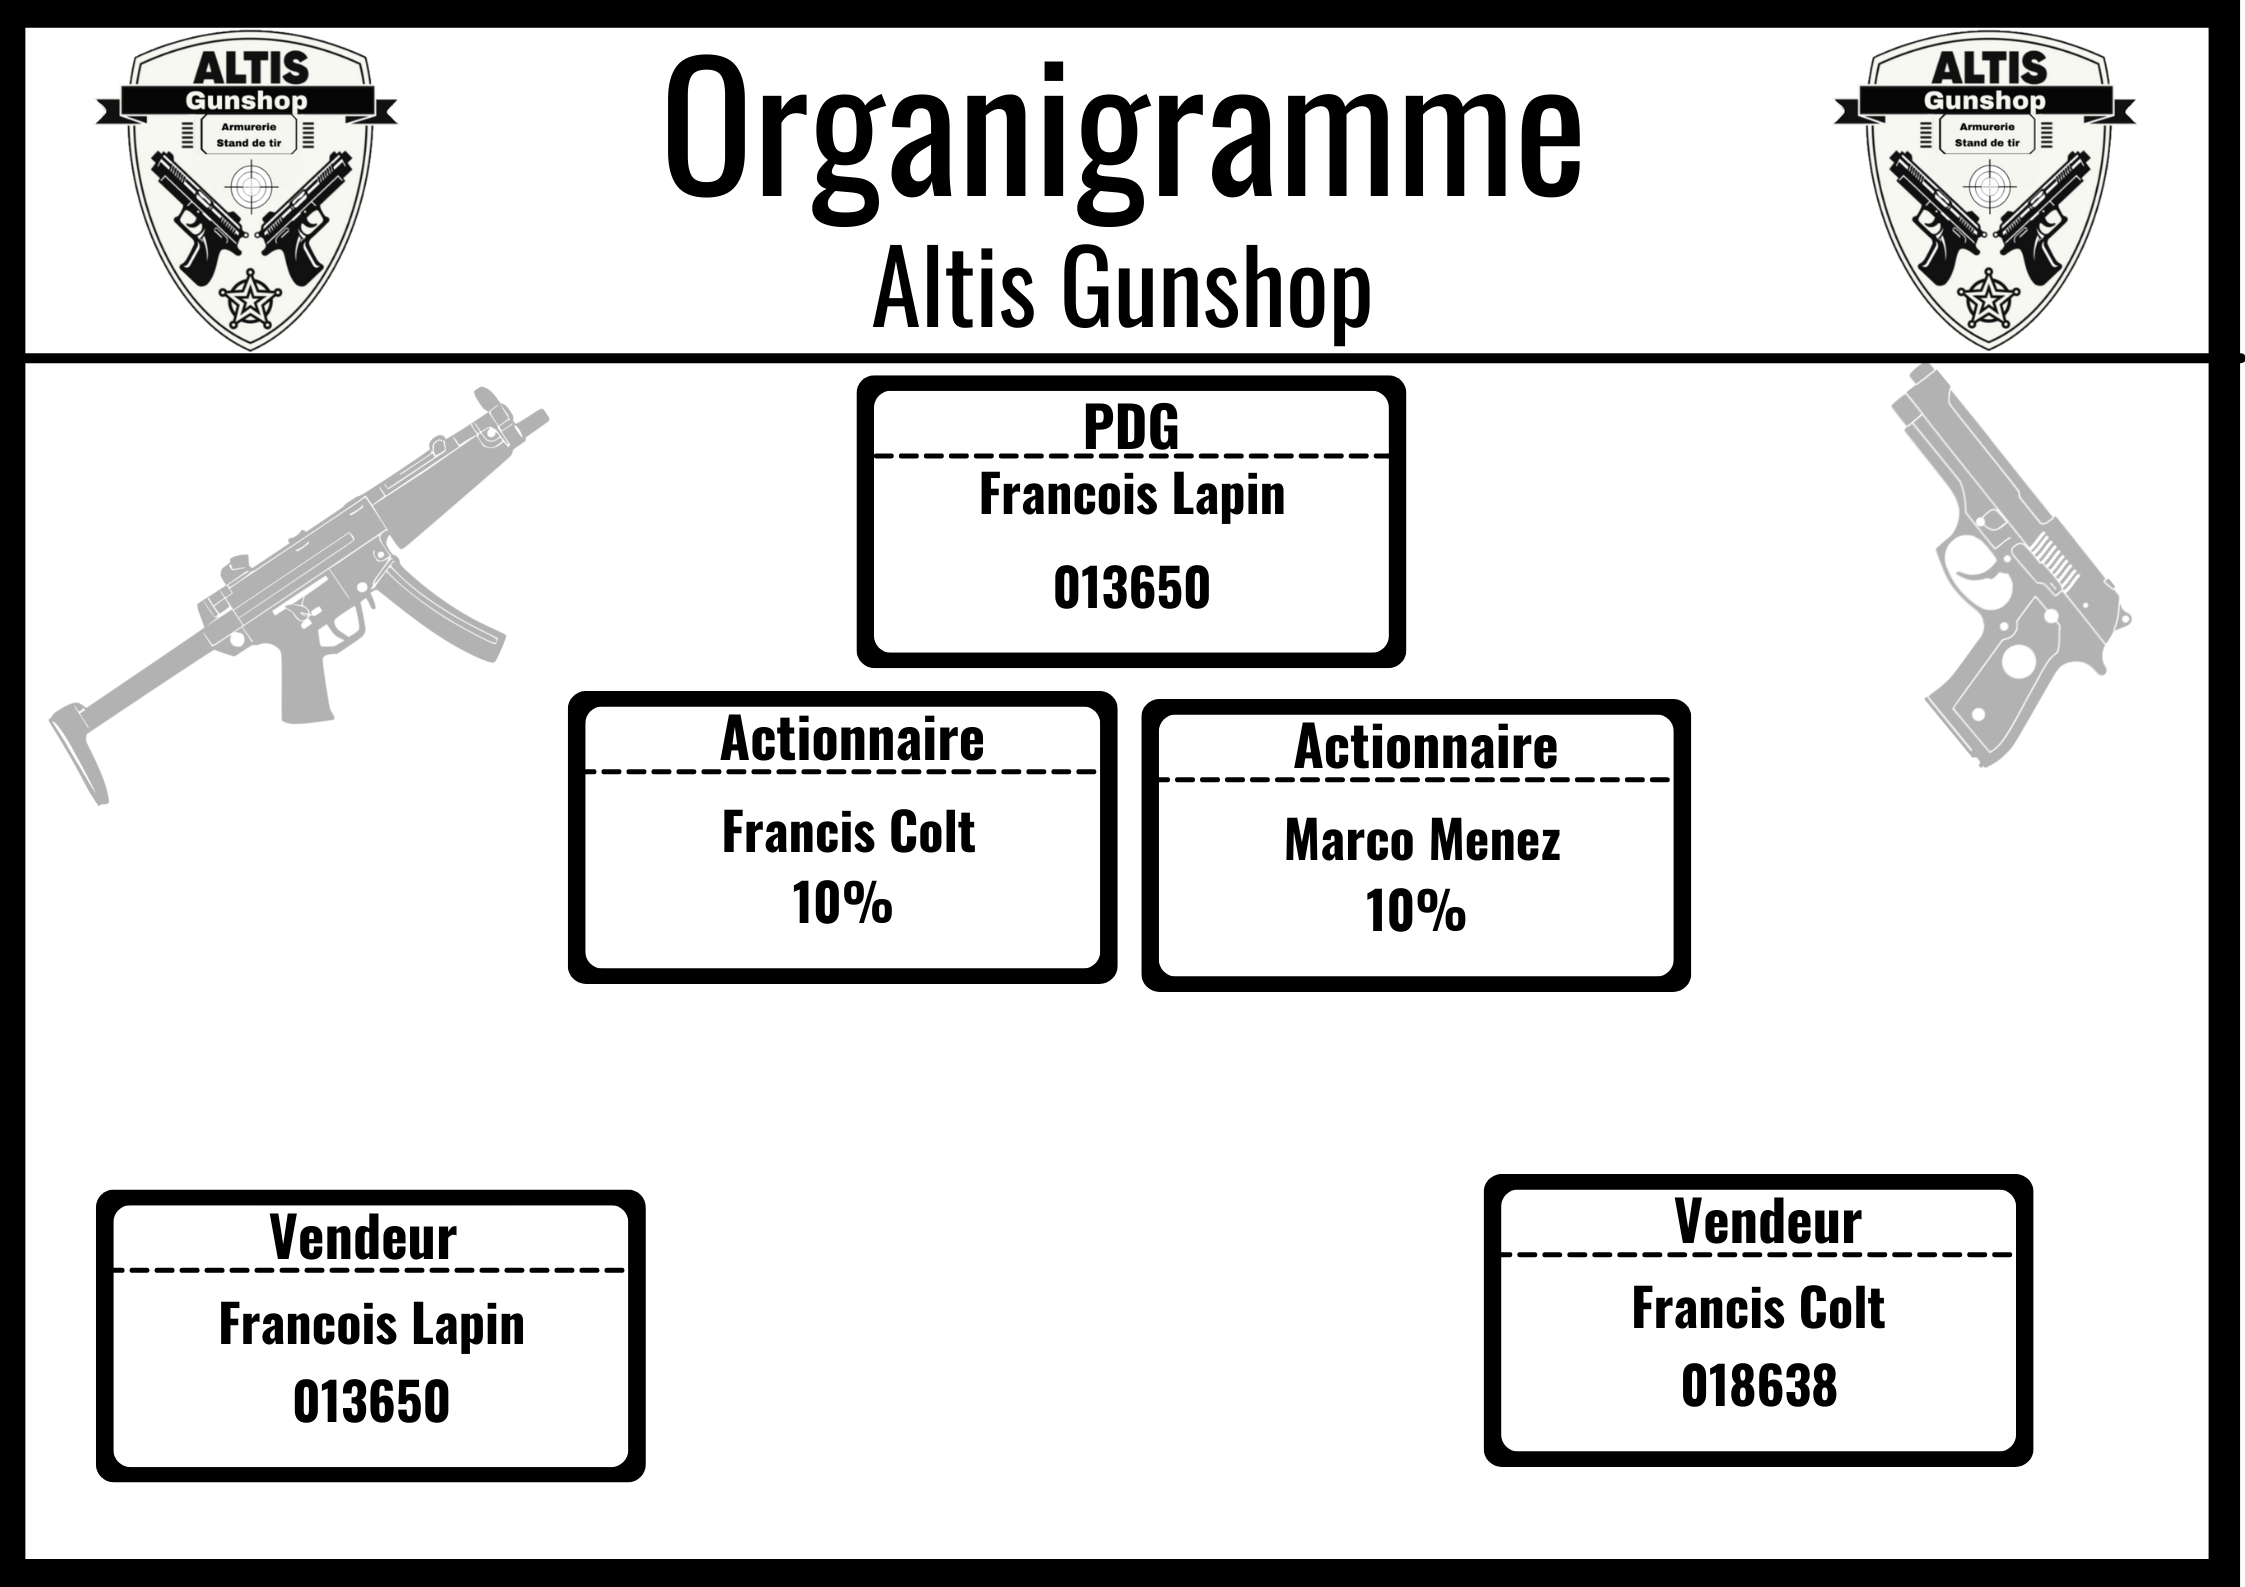 Organigramme Altis Gunshop.png